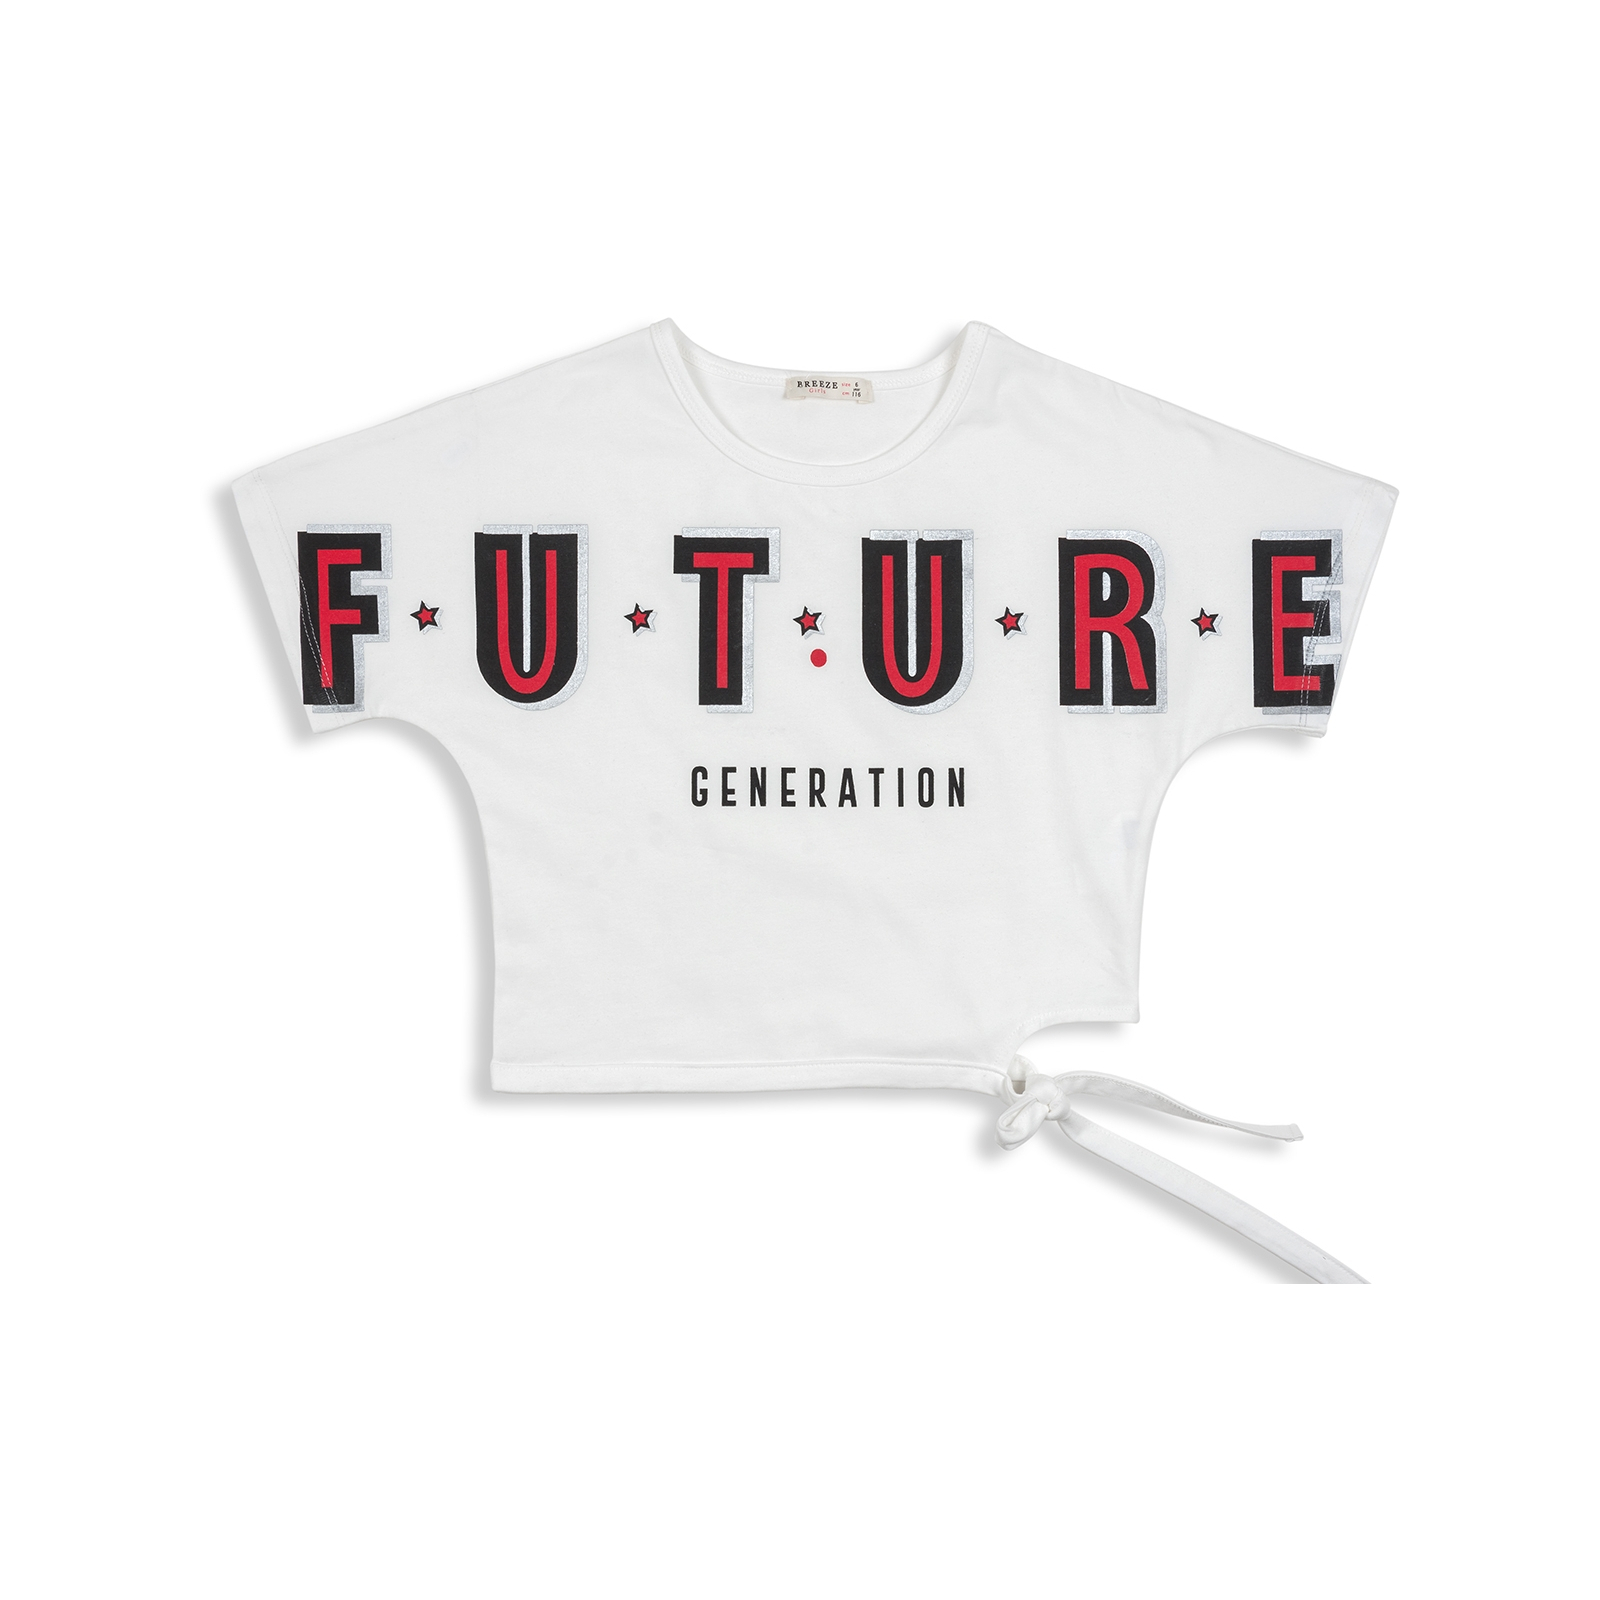 Набор детской одежды Breeze "FUTURE" (12864-152G-whiteblack) изображение 2